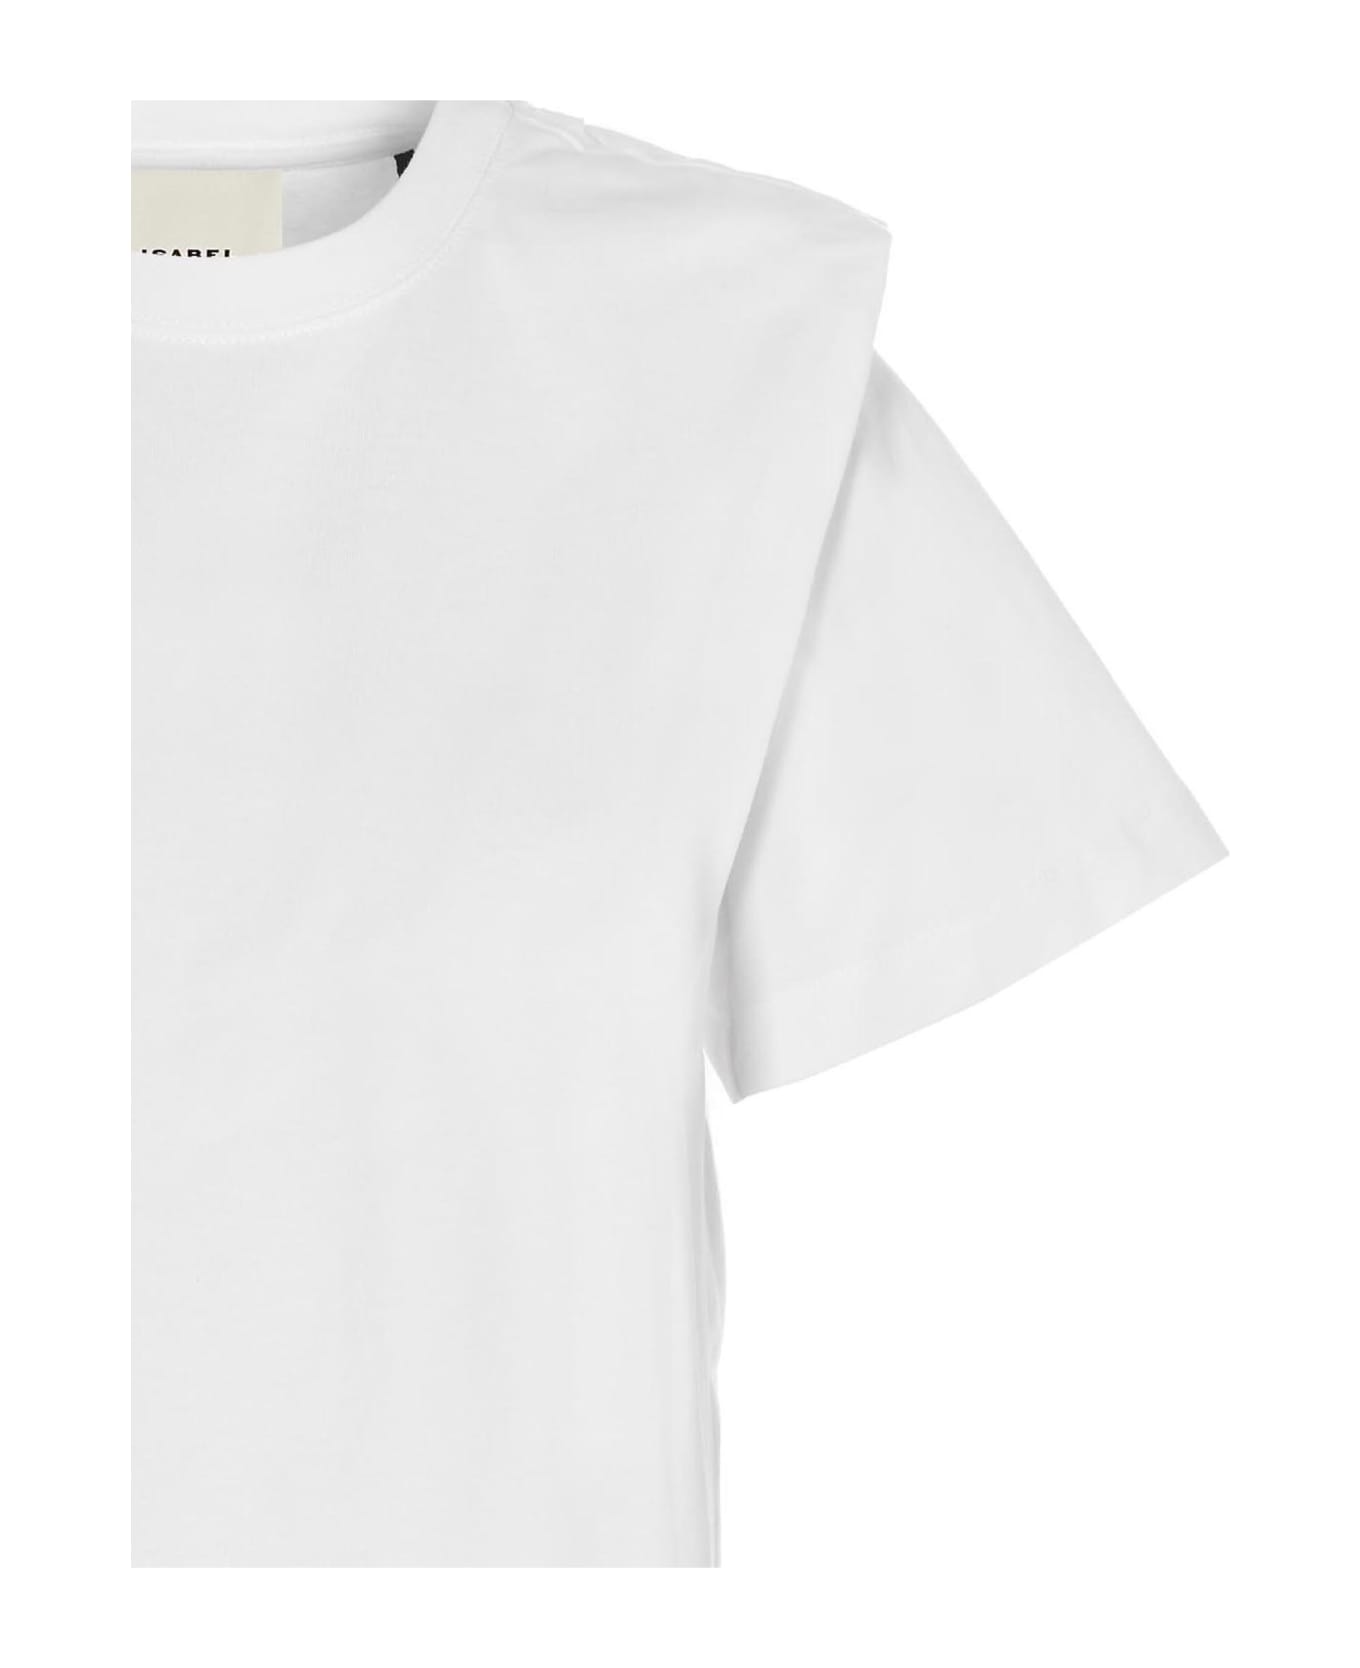 Isabel Marant Cropped T-shirt - WHITE